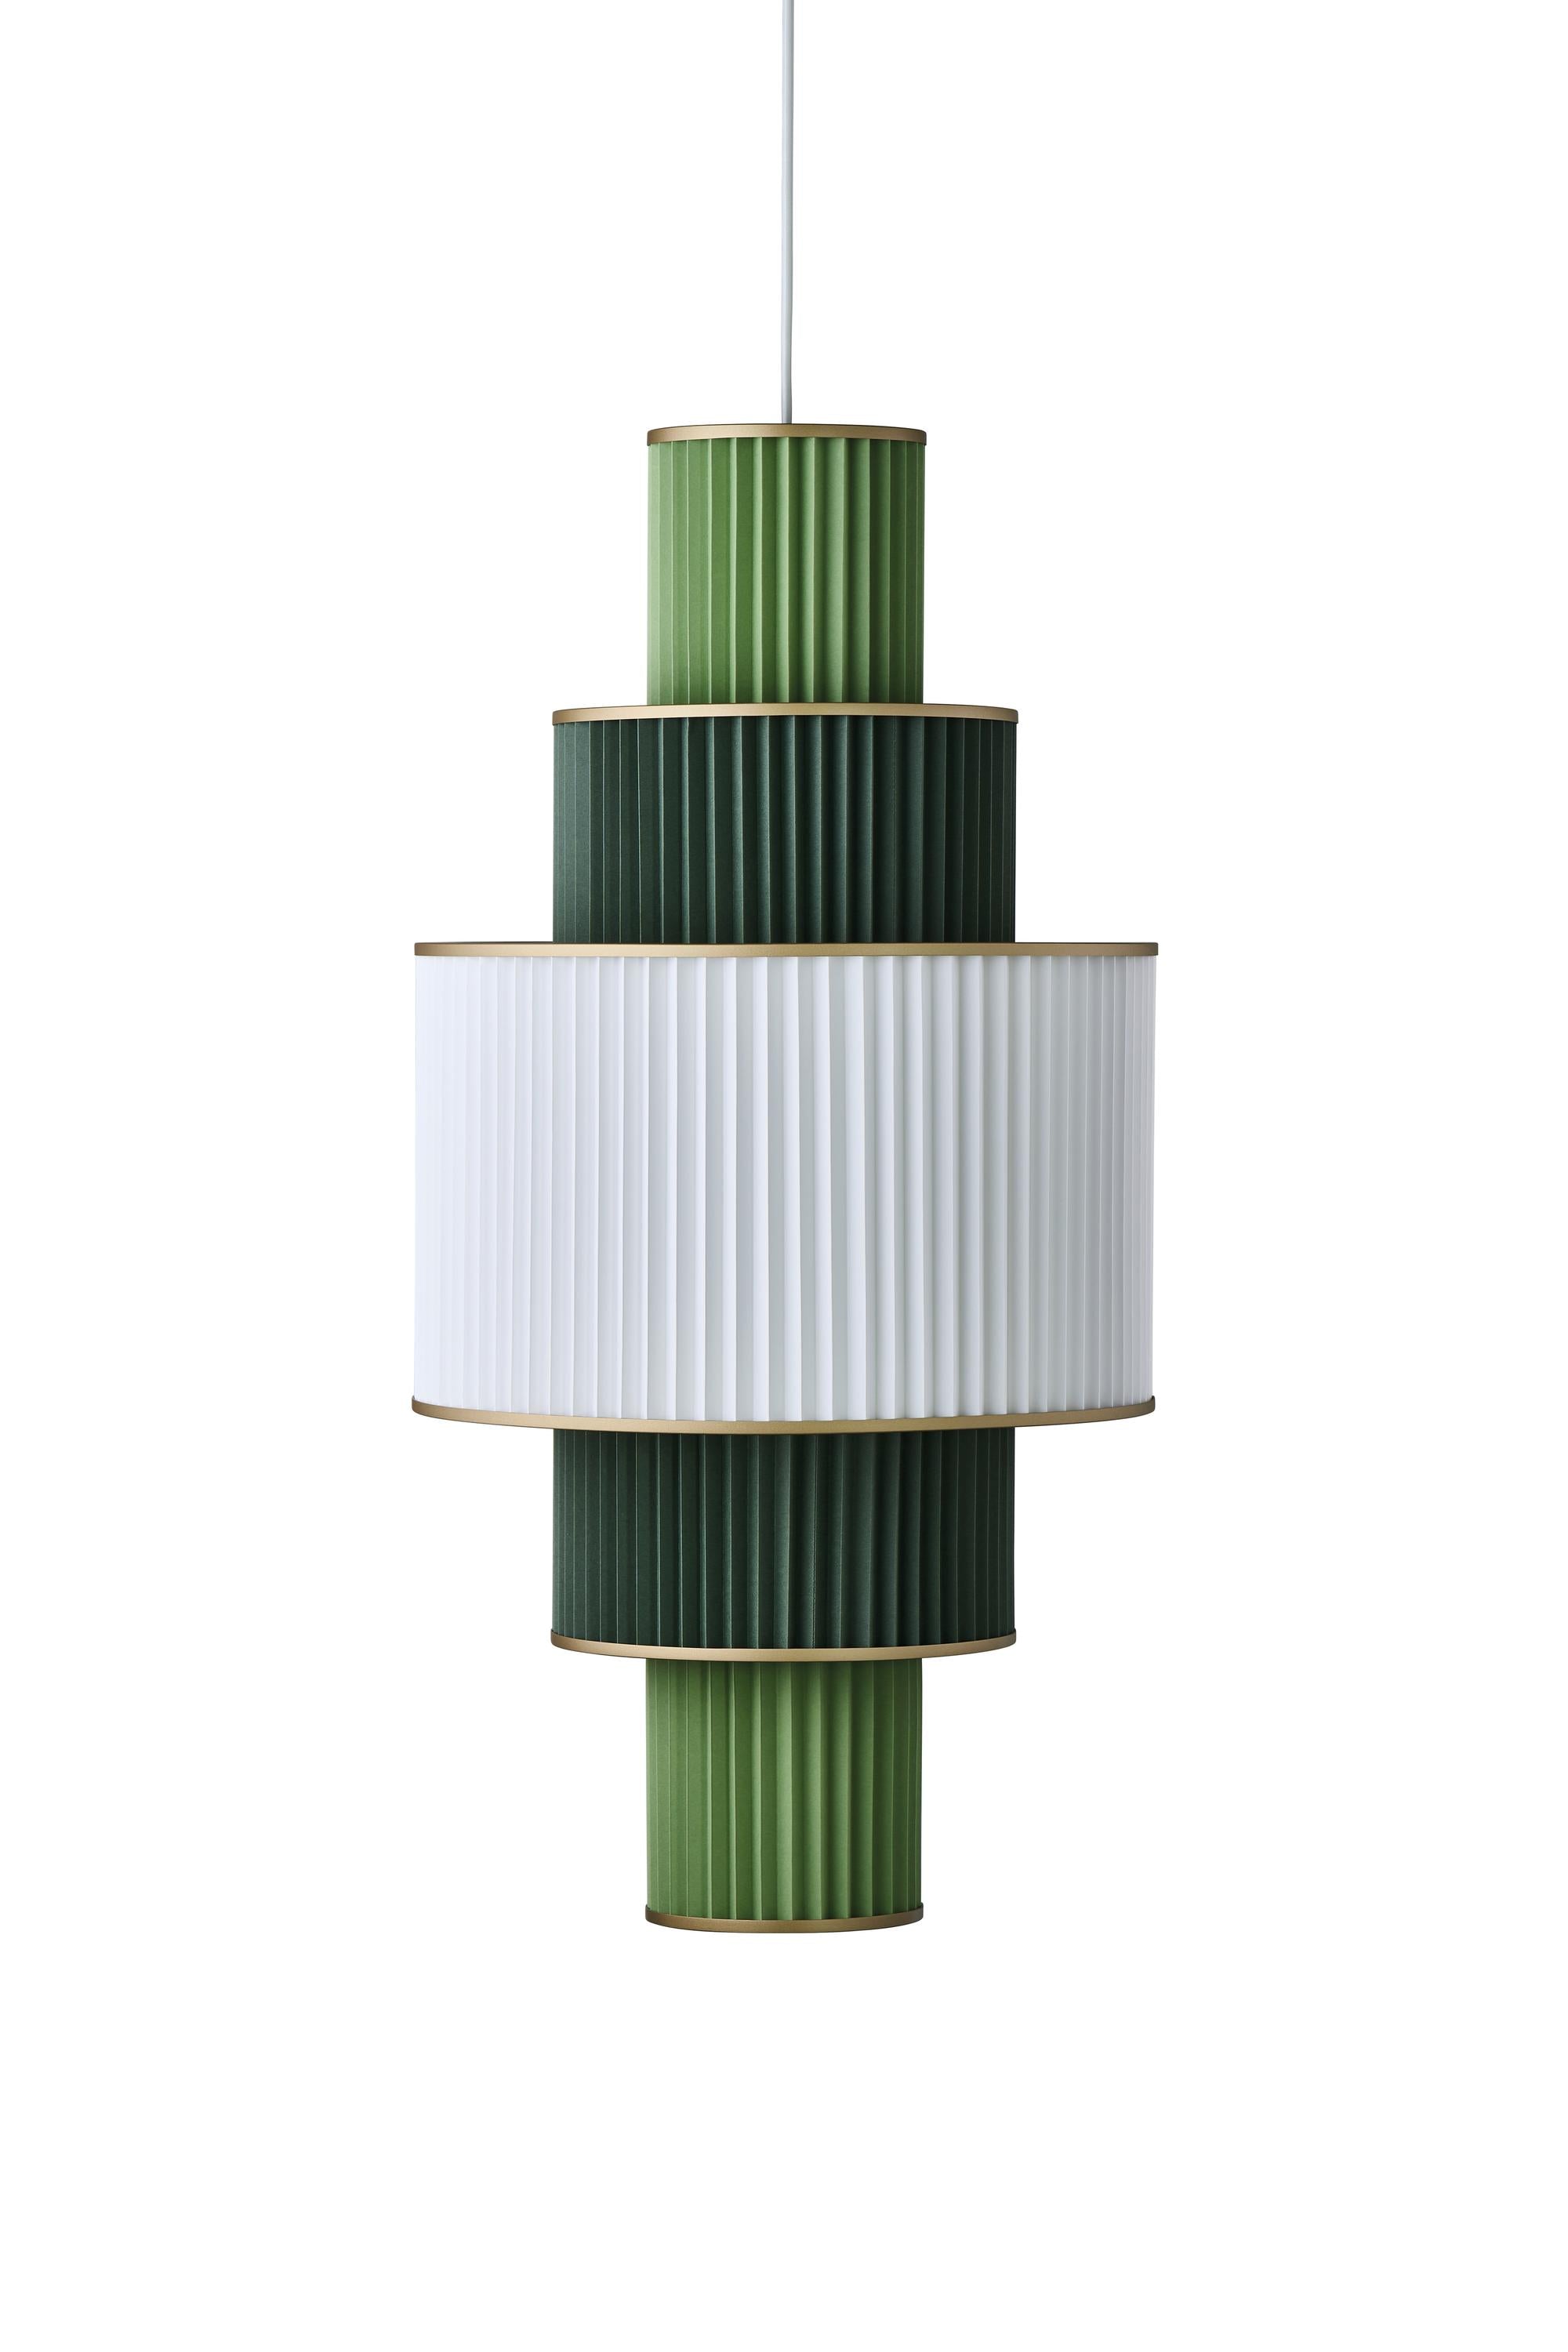 Le Klint Plivello Suspensjonslampe Golden/White/Light Green med 5 nyanser (S M L M S)